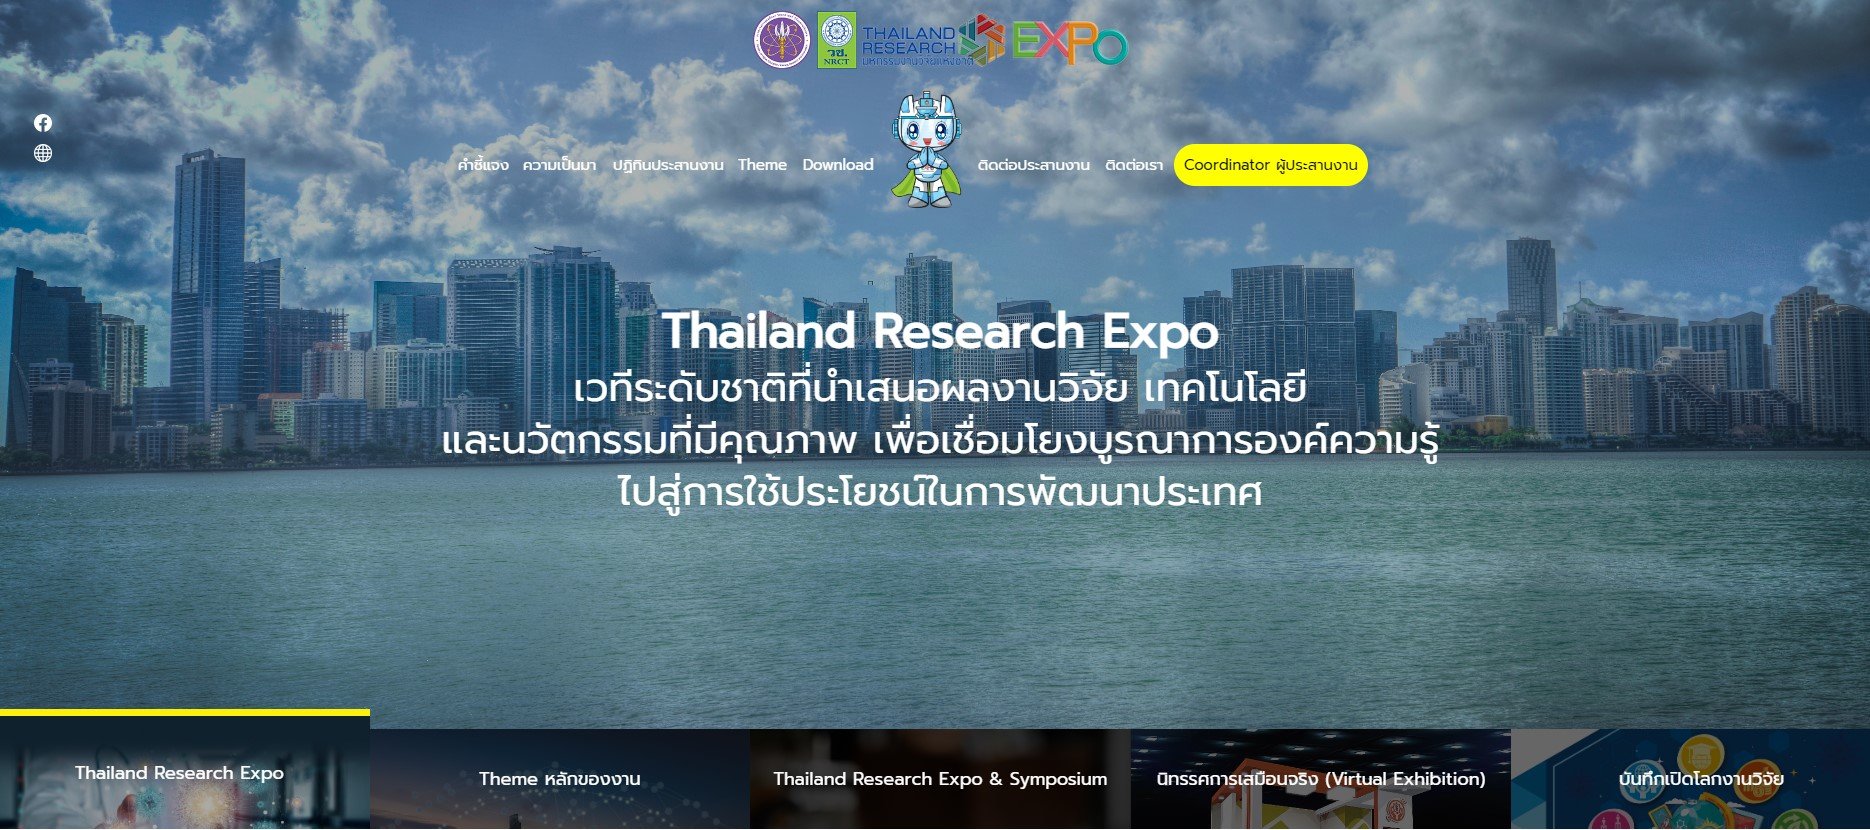 ประชาสัมพันธ์เชิญชวน ส่งบทความผลงานวิจัยเข้าร่วมนำเสนอในกิจกรรม Thailand Research Expo & Symposium 2023